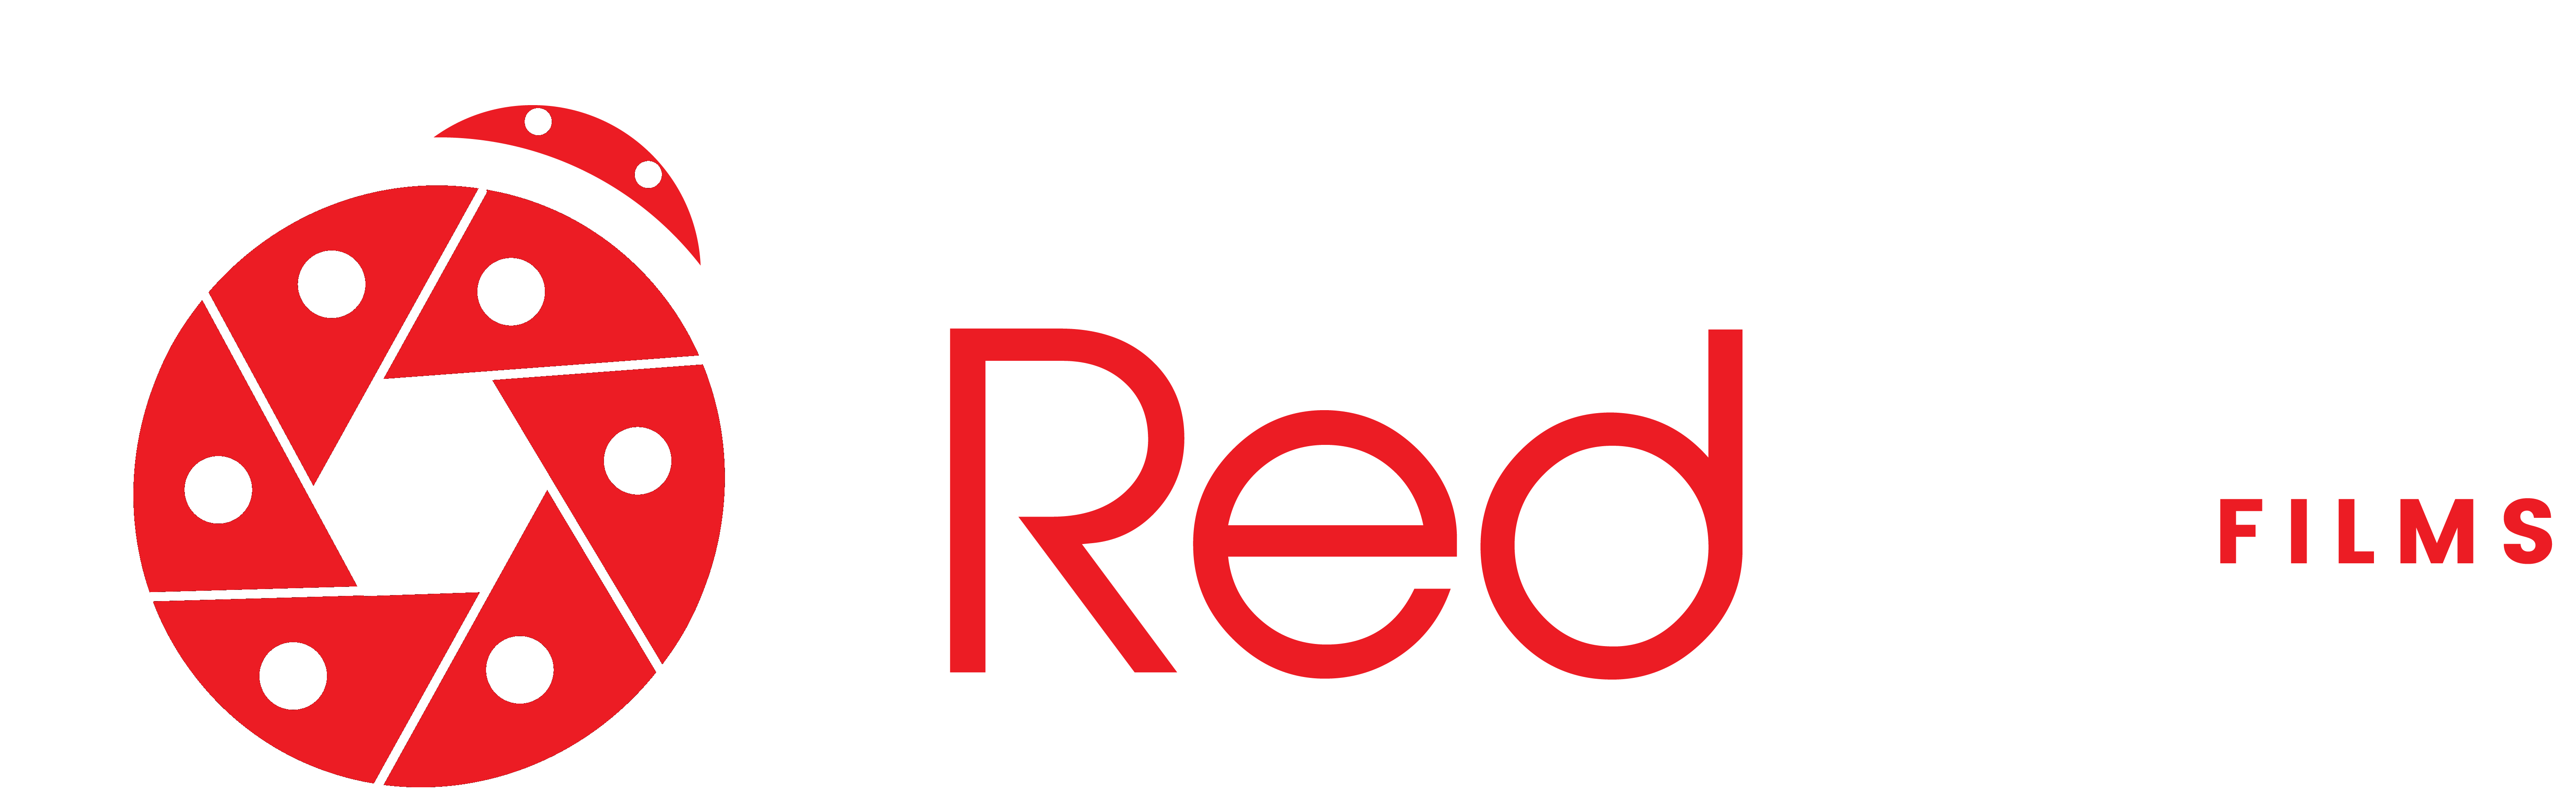 redbug-logo